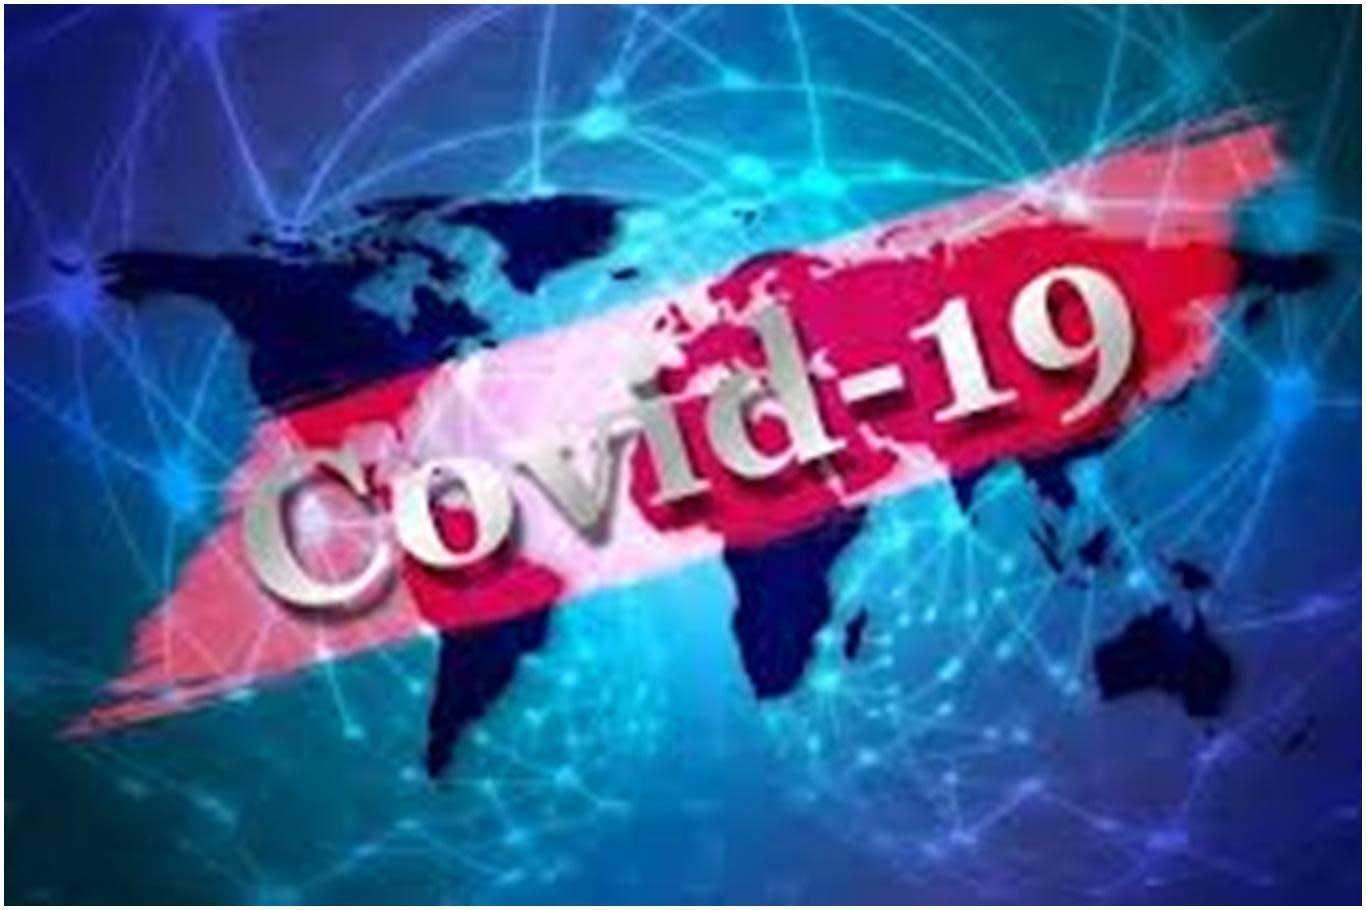 İletişim Başkanlığı, dünya genelindeki Coronavirus vaka durumunu açıkladı